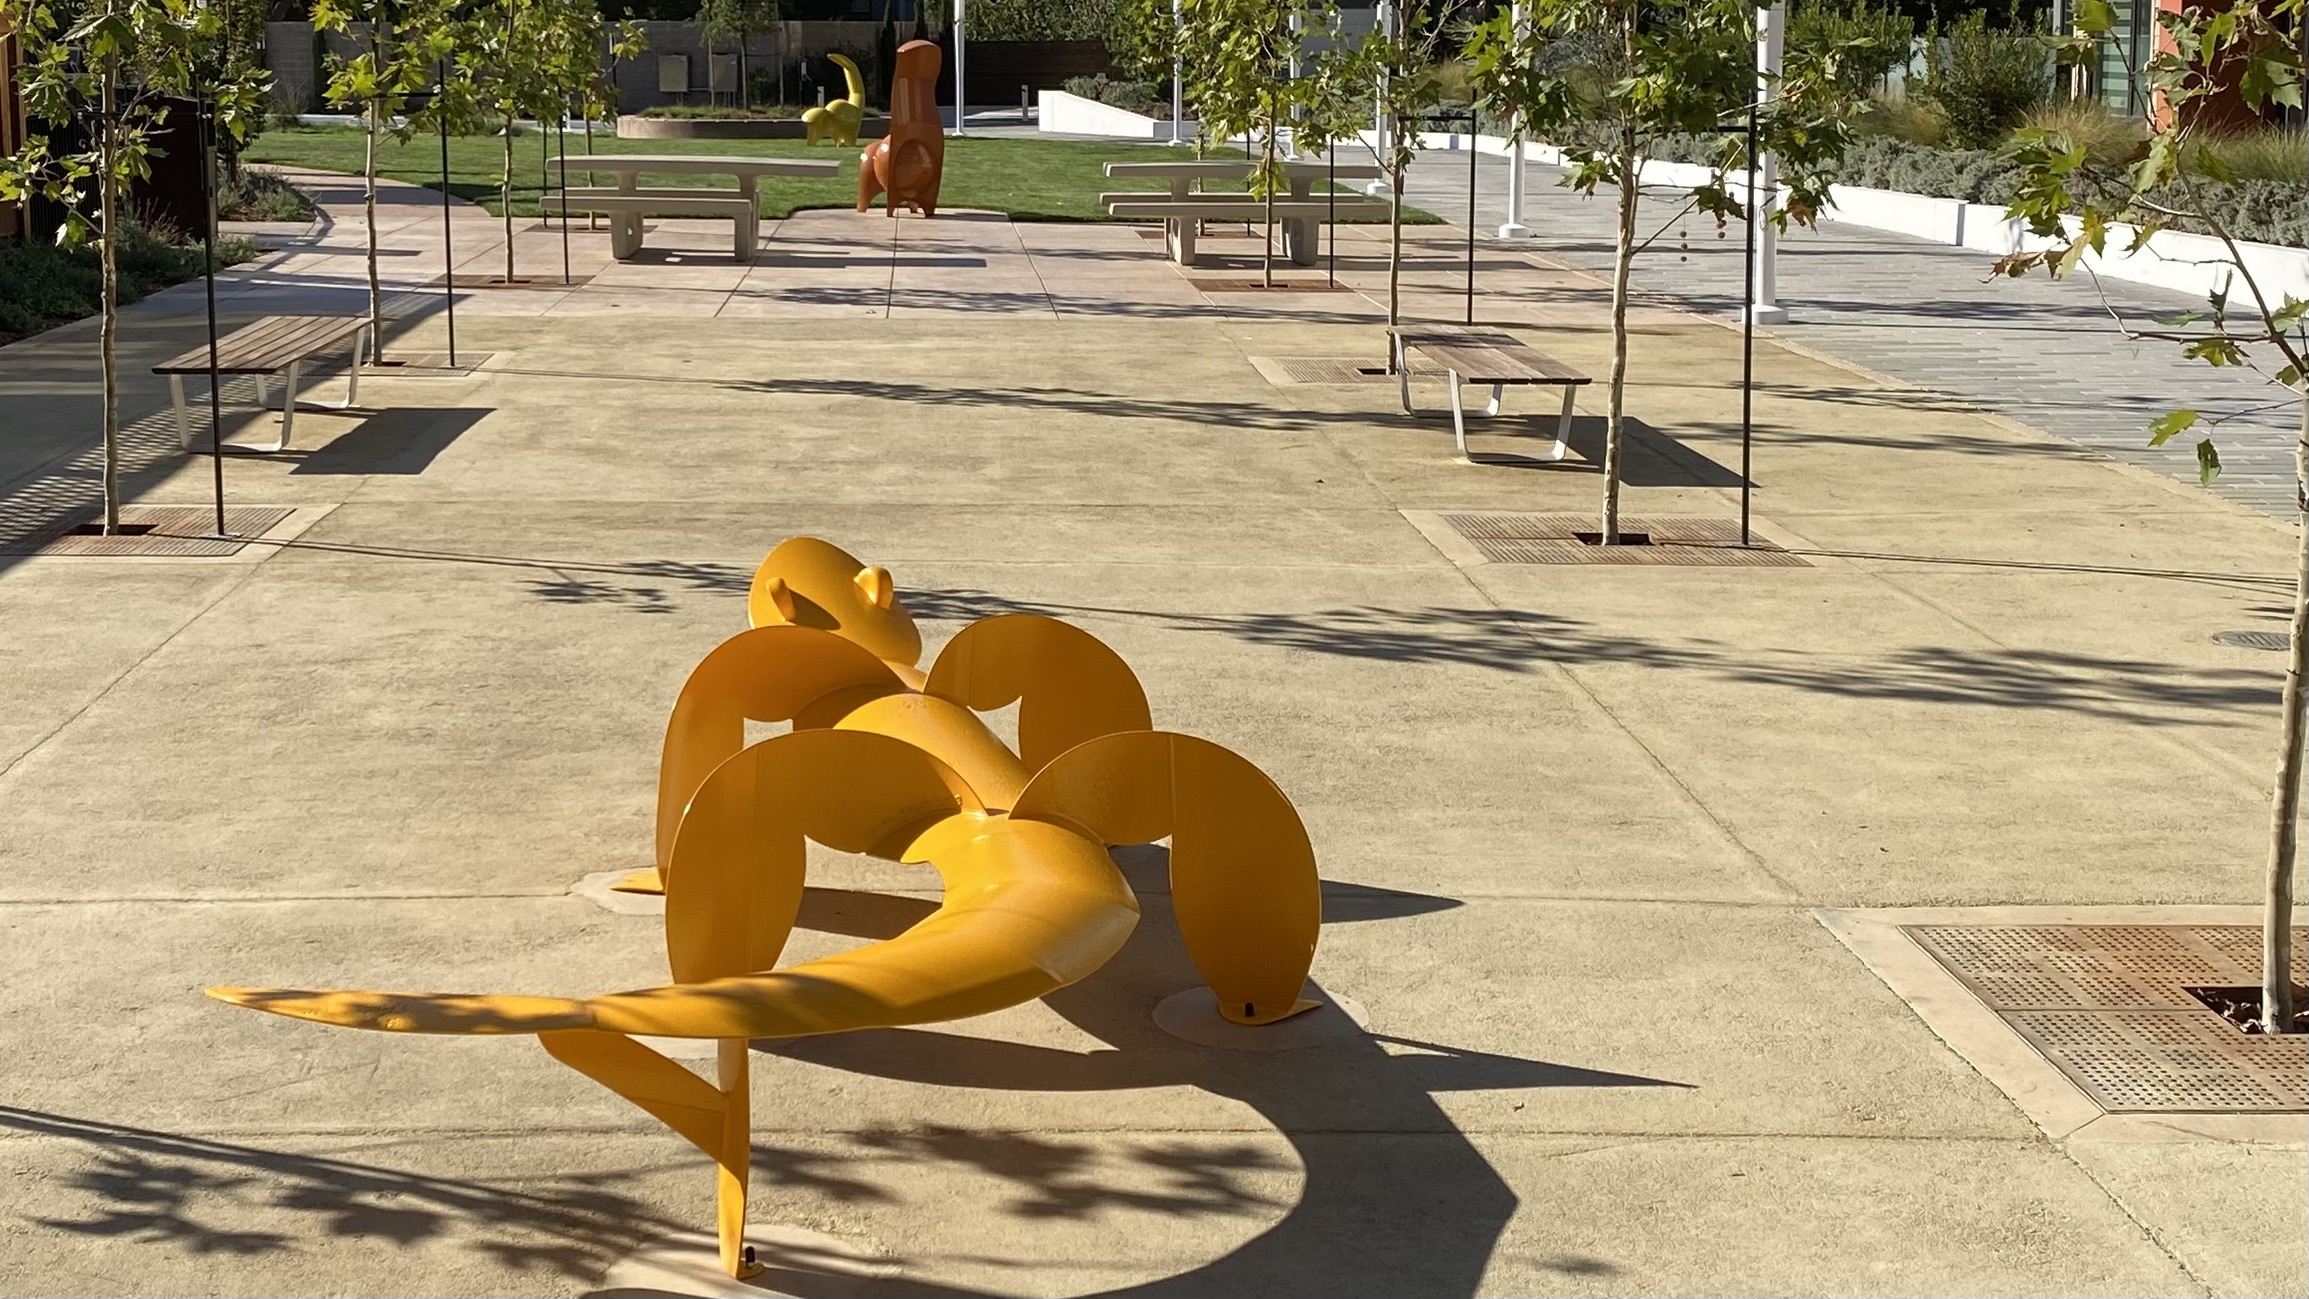 Squirrels and Lizard interactive sculptures